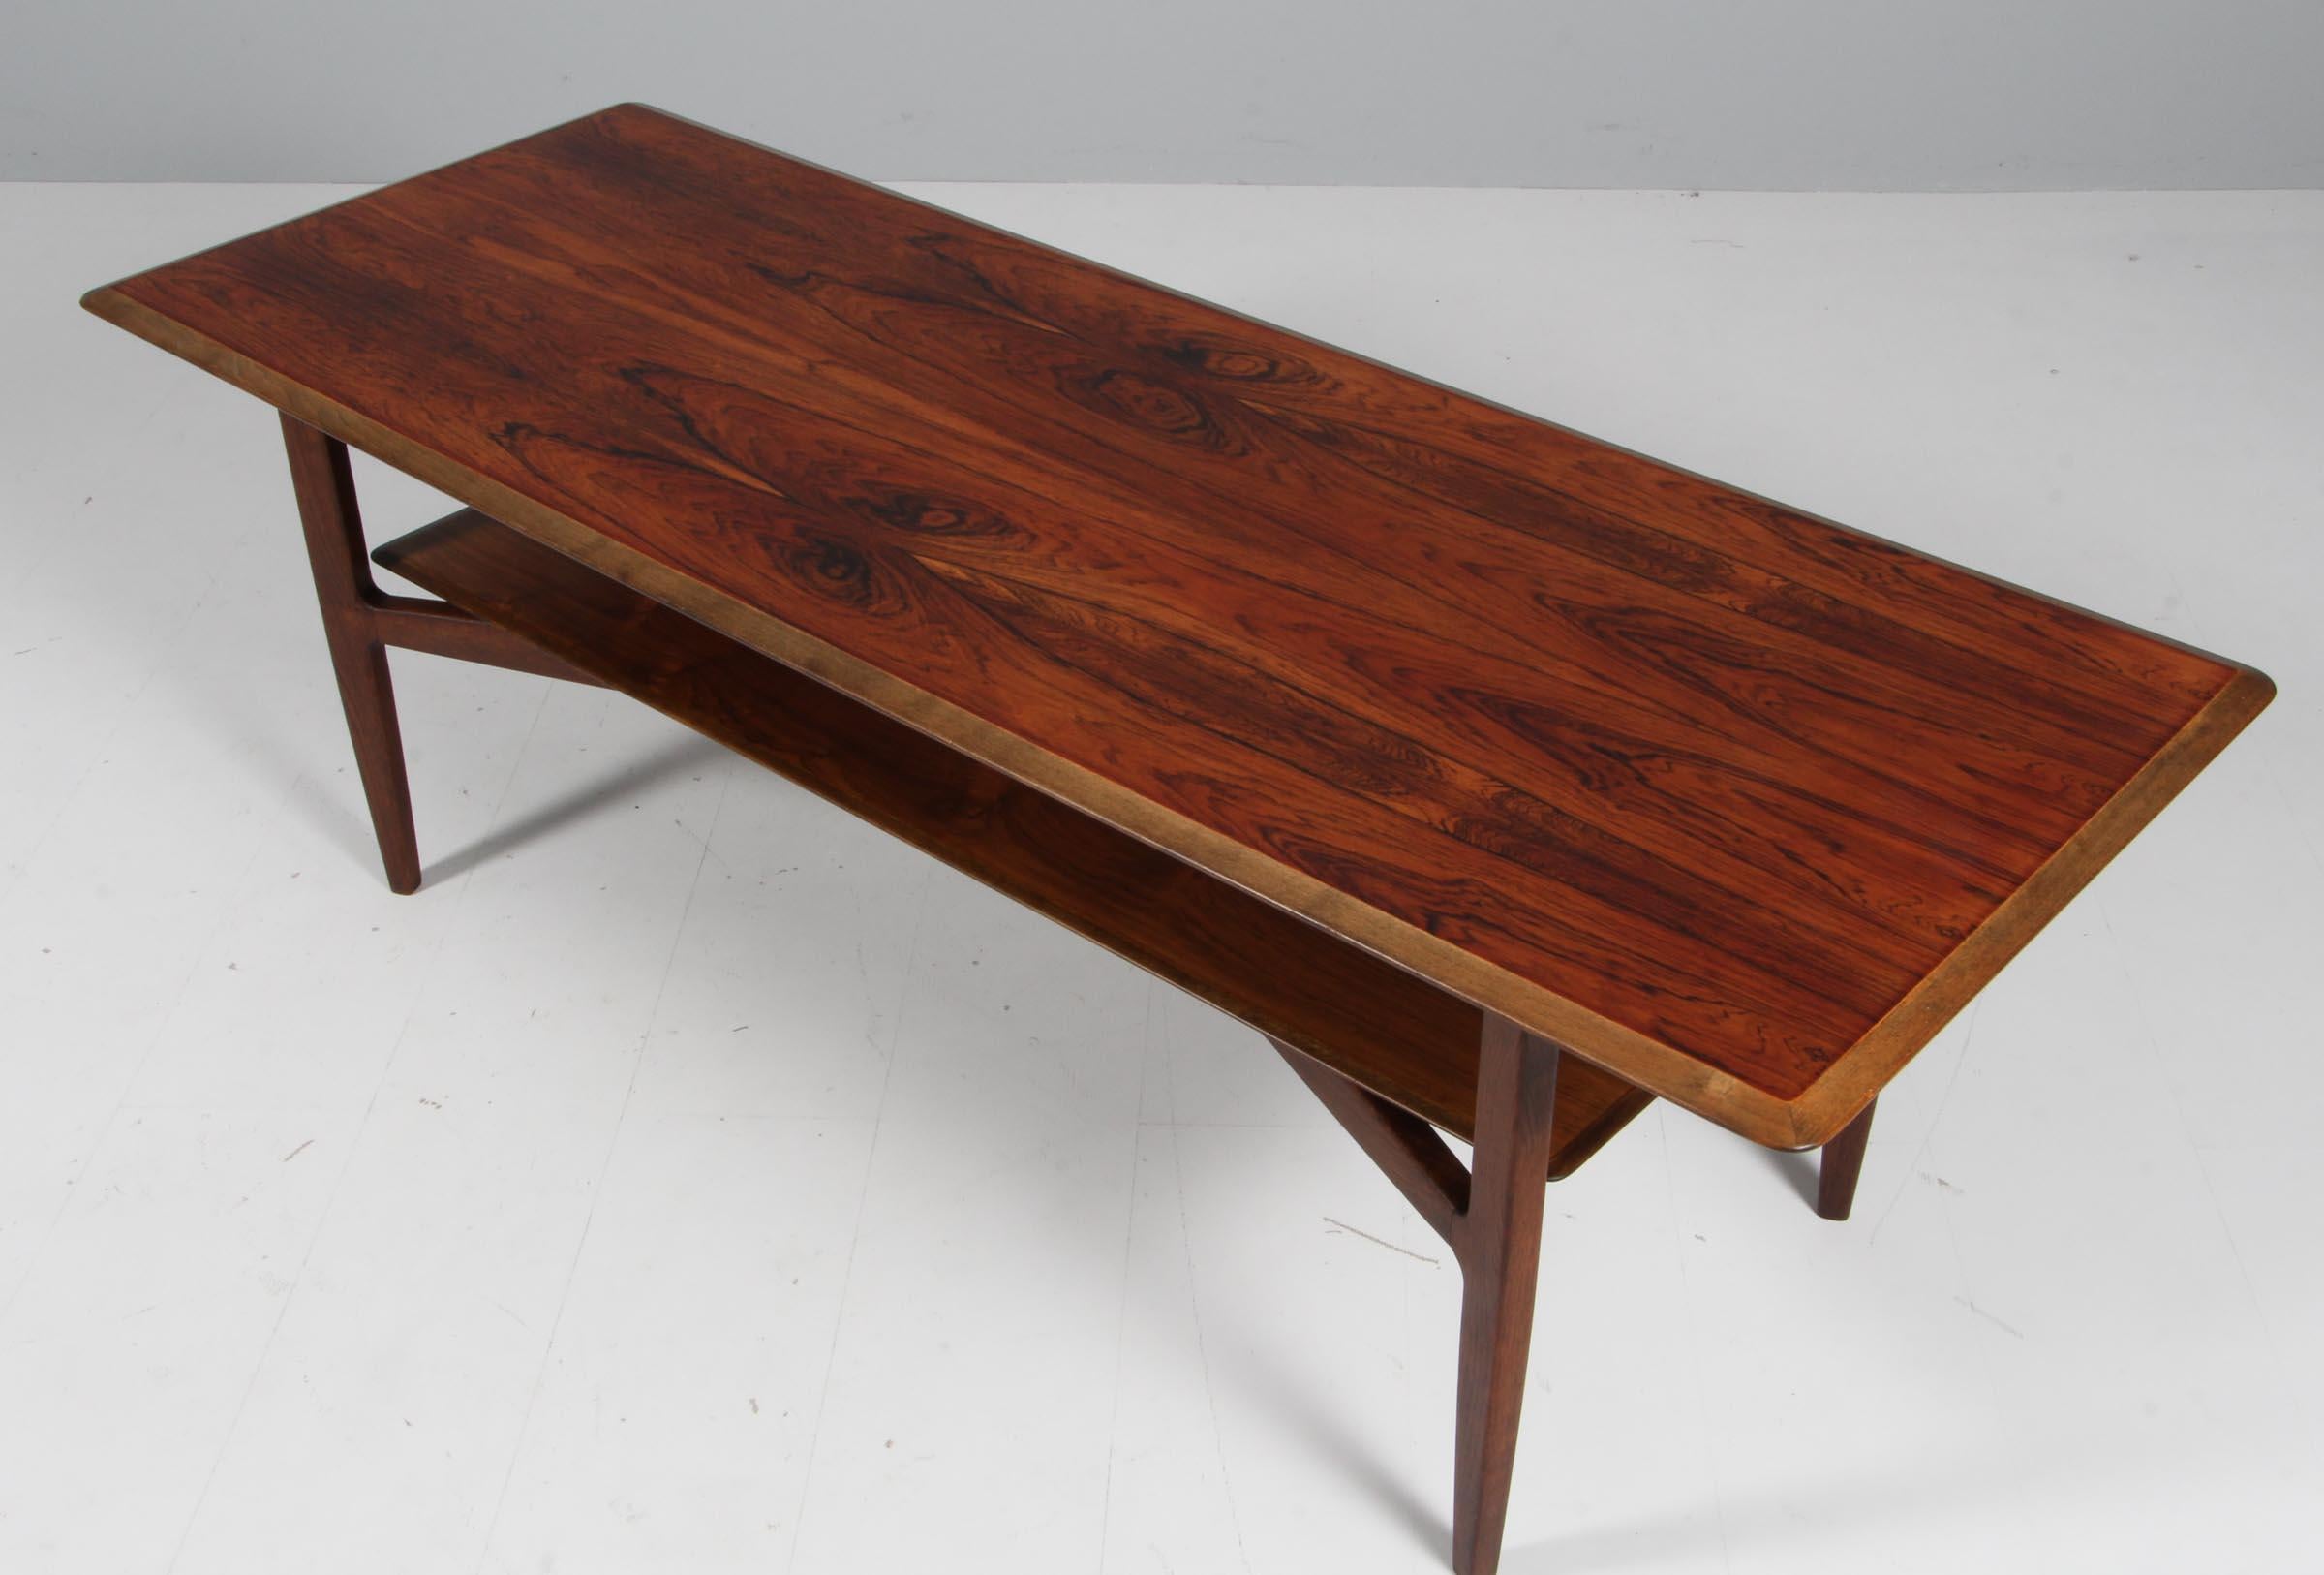 Ib Kofod-Larsen sofa table in oak and rosewood

Made by Christensen & Larsen.